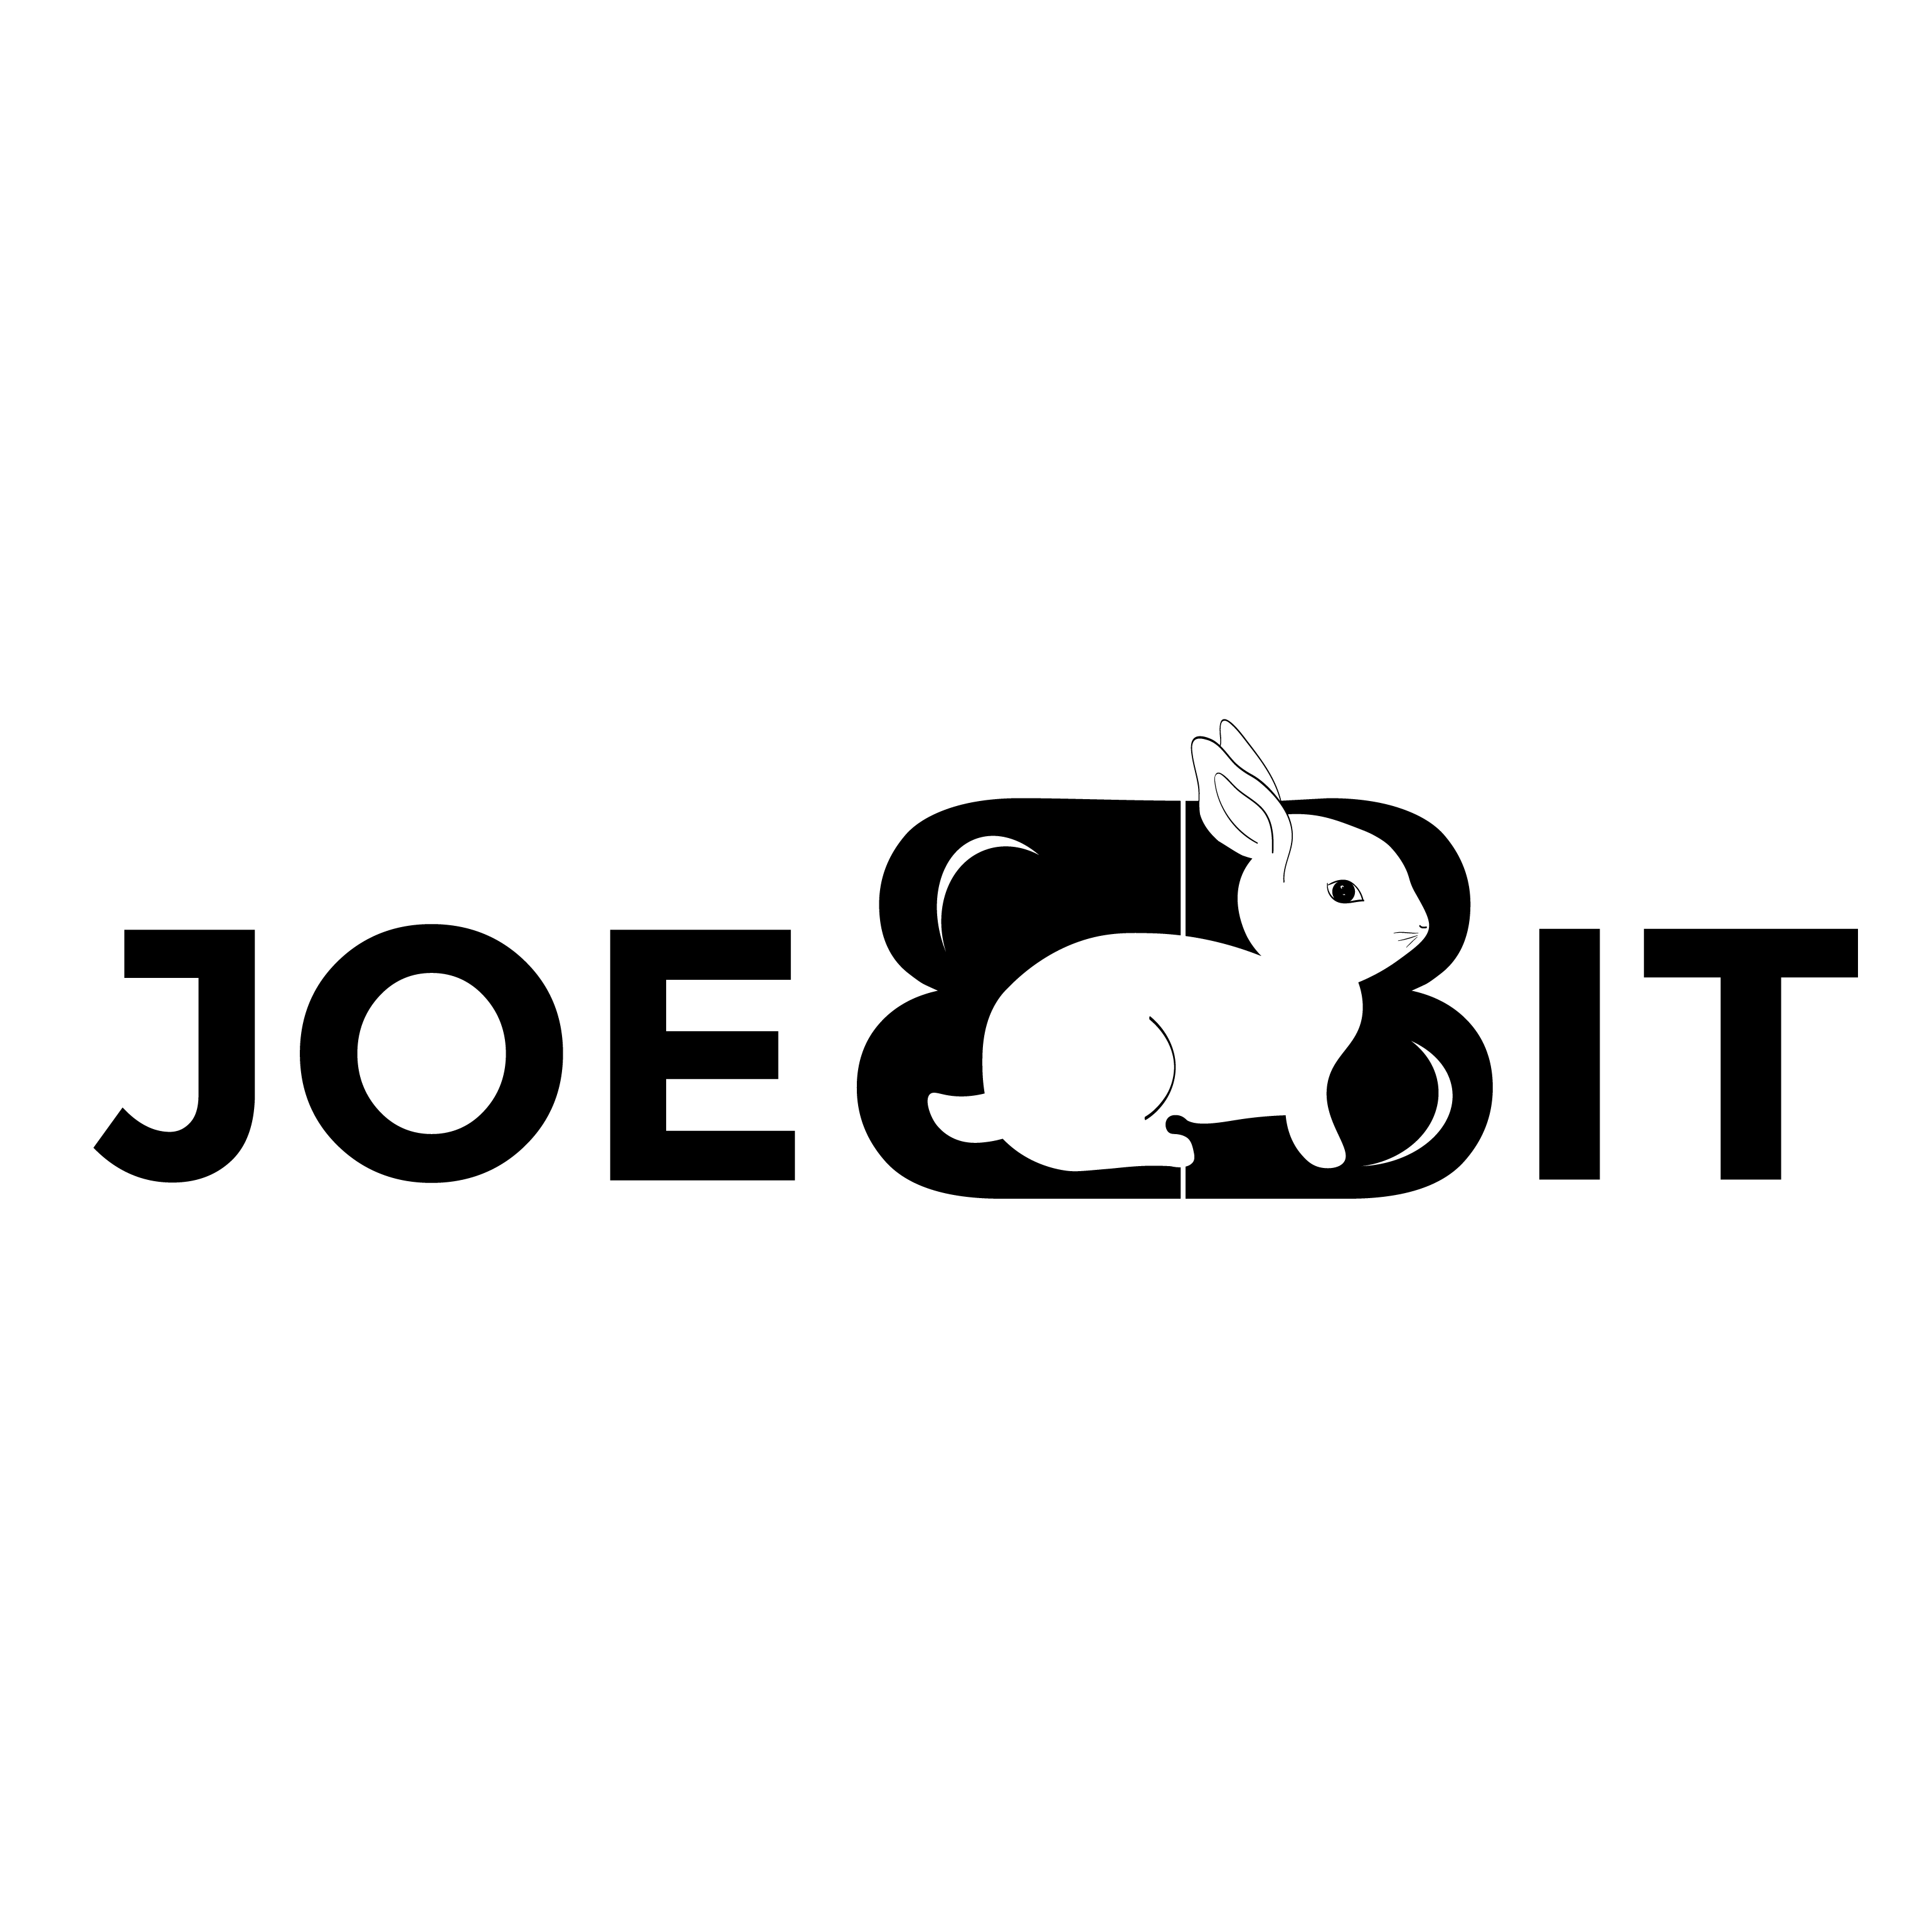 Joebbit Blog